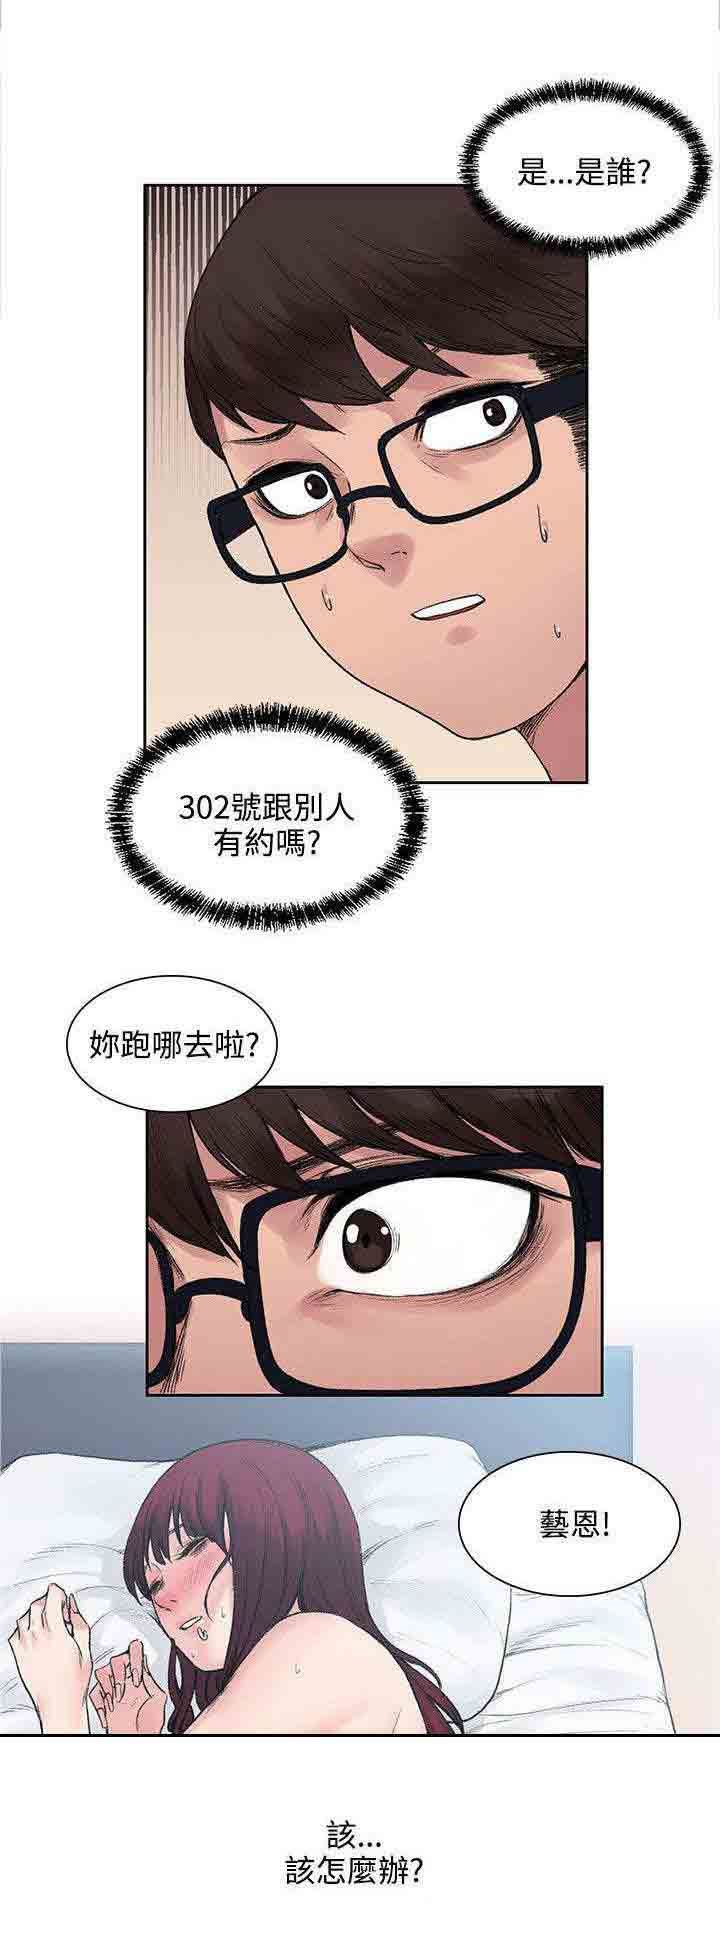 韩国污漫画 甜蜜的香氣 第22话302号的朋友 1